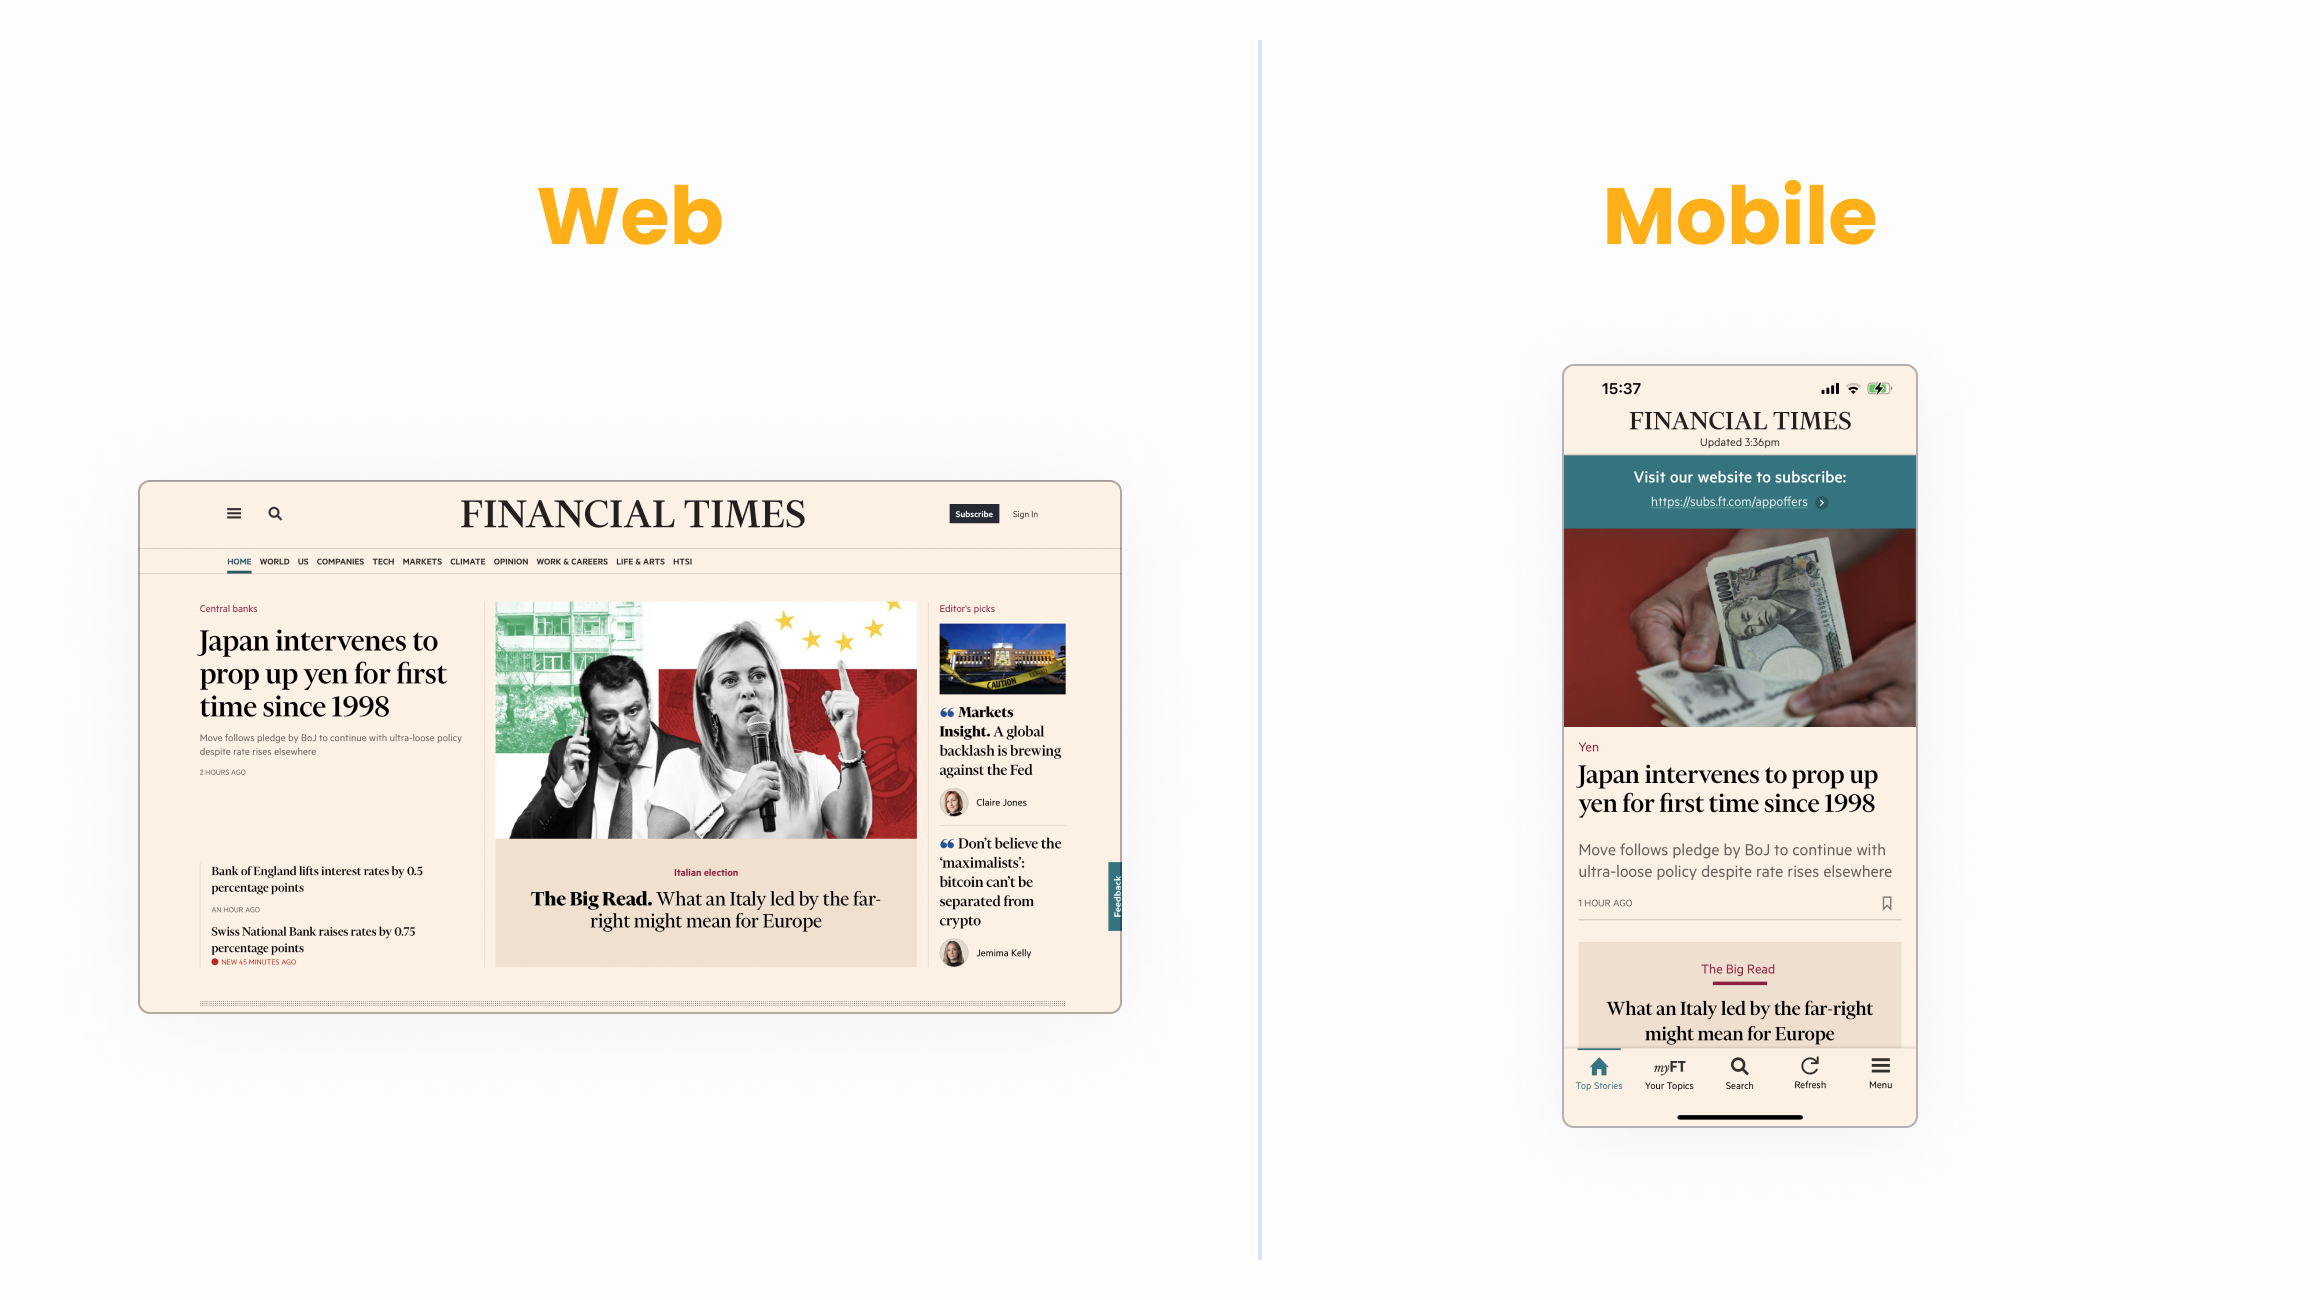 Mobile App vs website